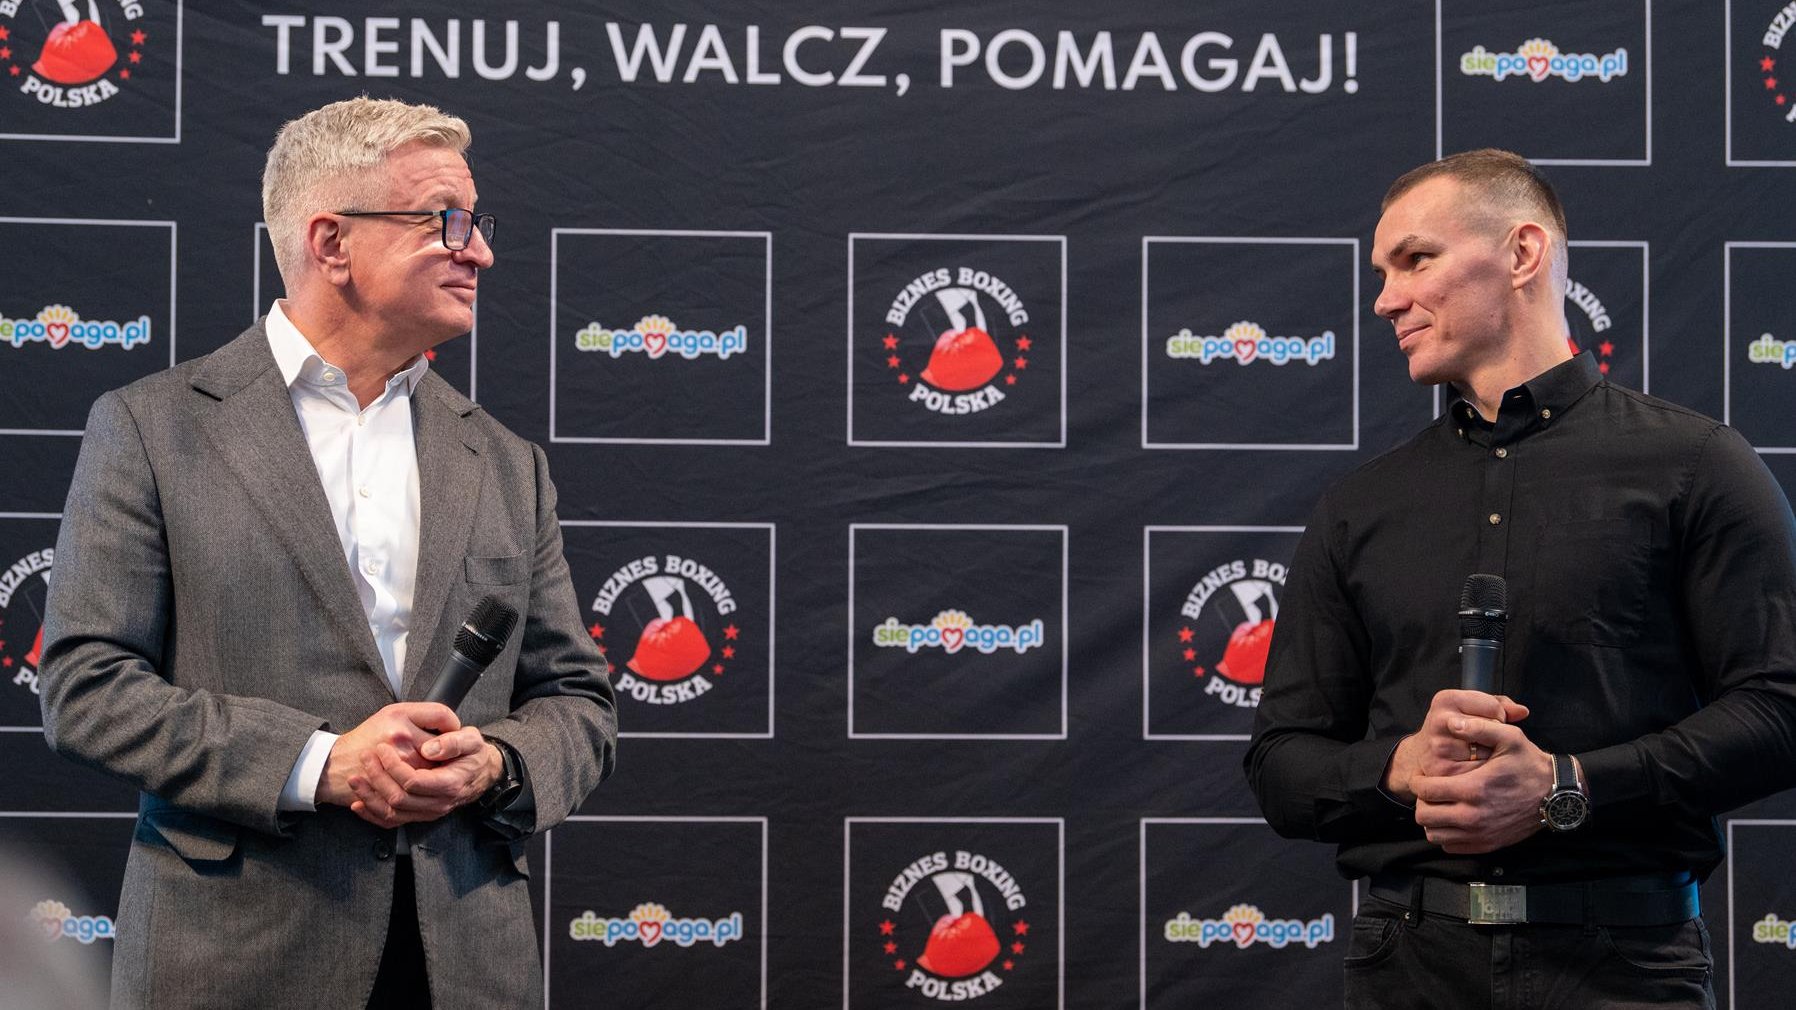 Na zdjęciu Jacek Jaśkowiak i Mateusz Masternak stoją obok siebie podczas konferencji prasowej